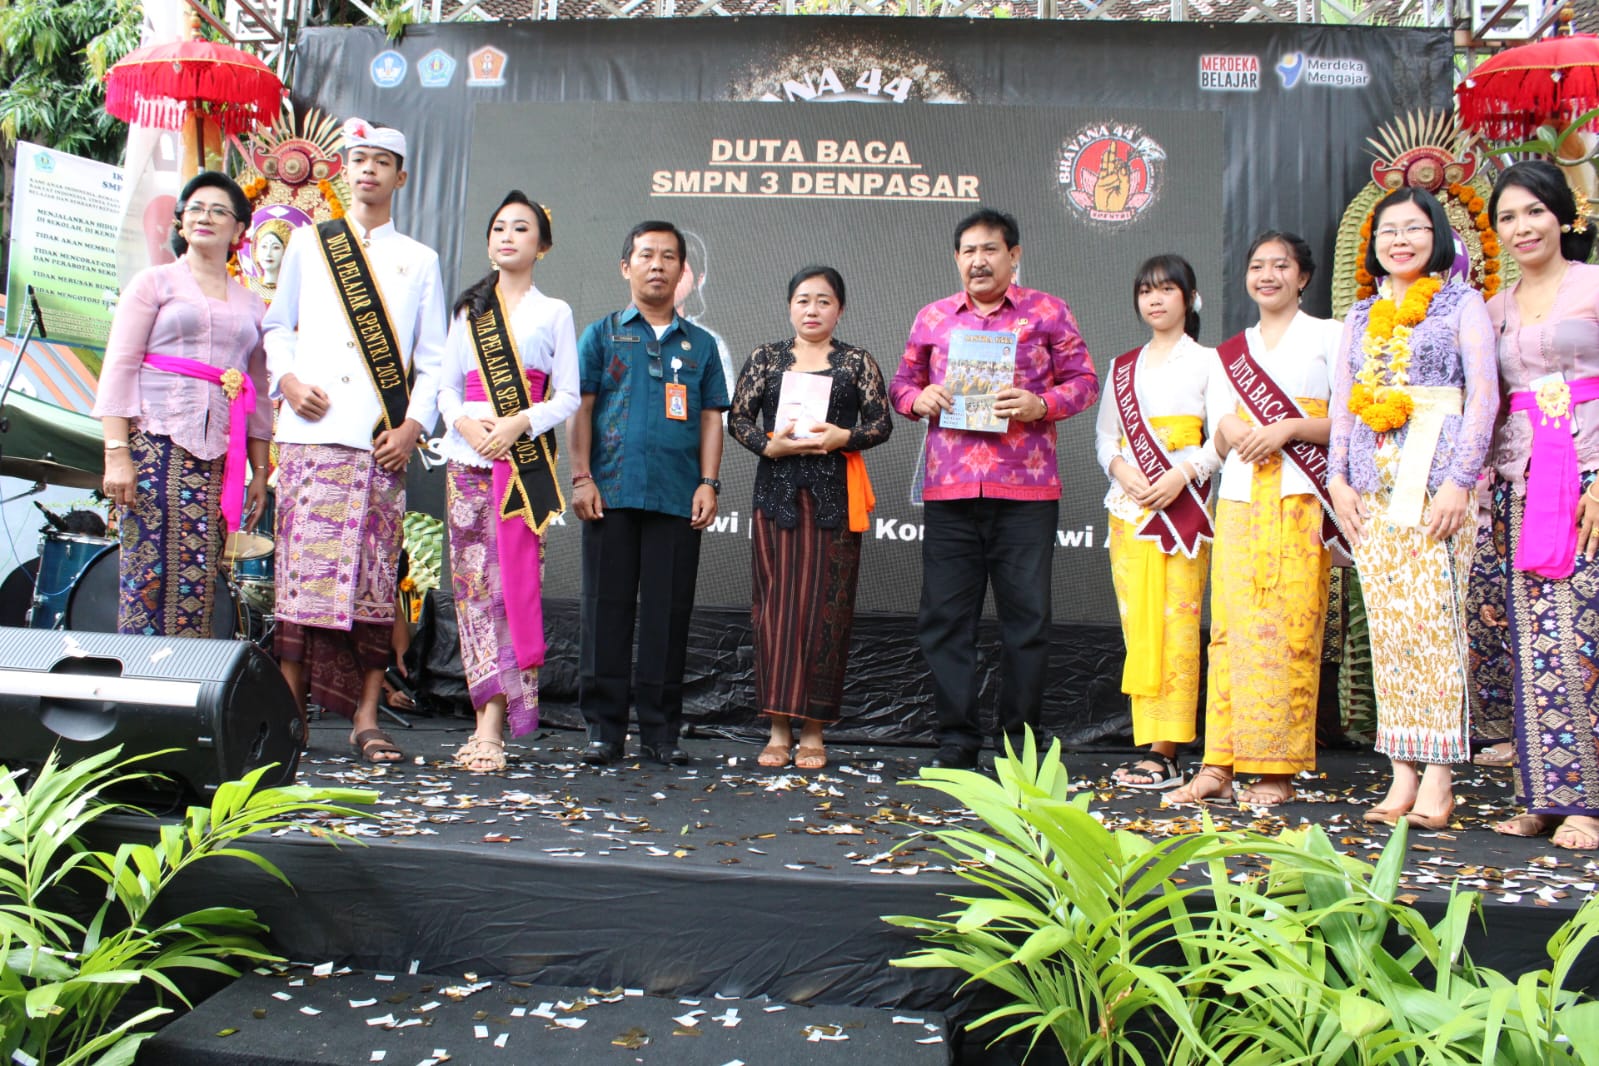 Ny. Sagung Antari Jaya Negara Kukuhkan Duta Baca Spentri Pada Perayaan HUT ke 44 SMPN 3 Denpasar